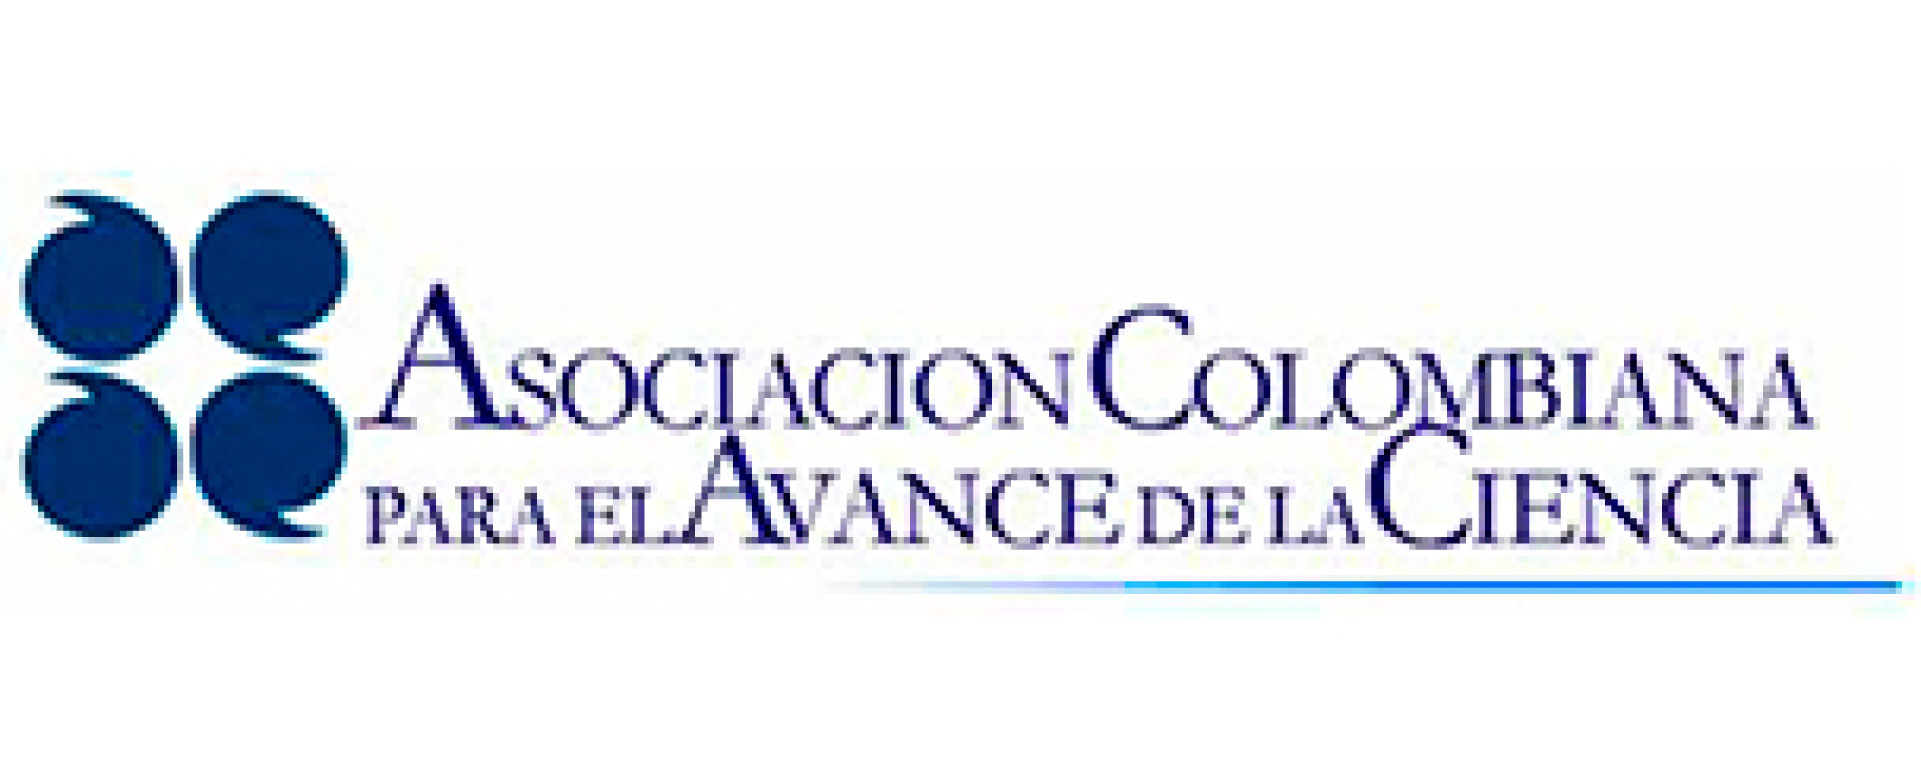 Asociacion colombiana para el avance de la ciencia - ACAC